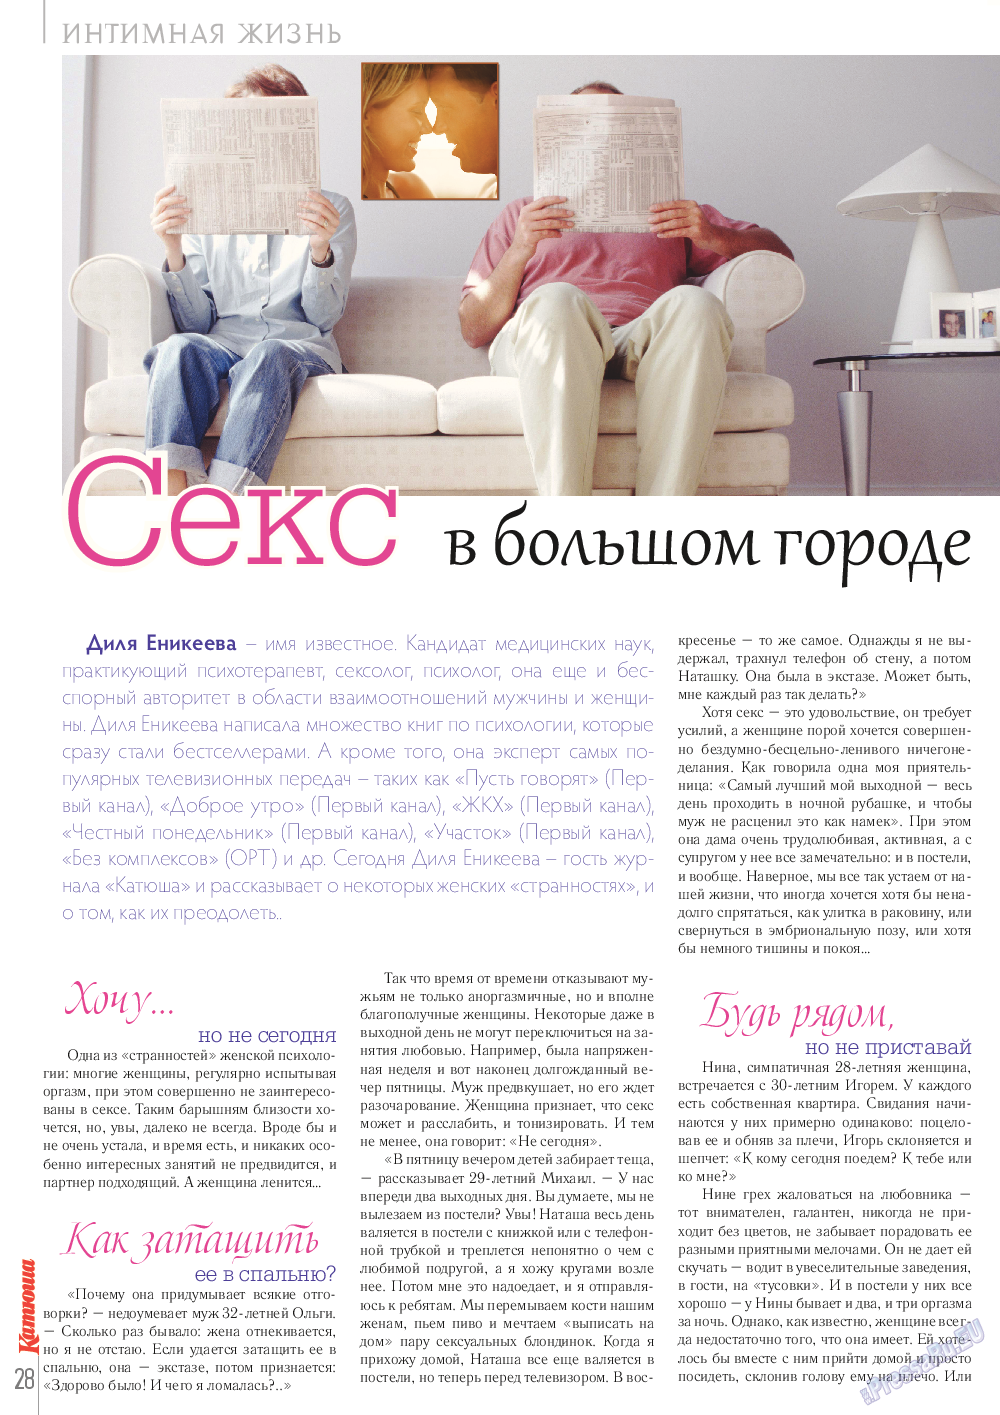 Катюша (журнал). 2014 год, номер 40, стр. 28